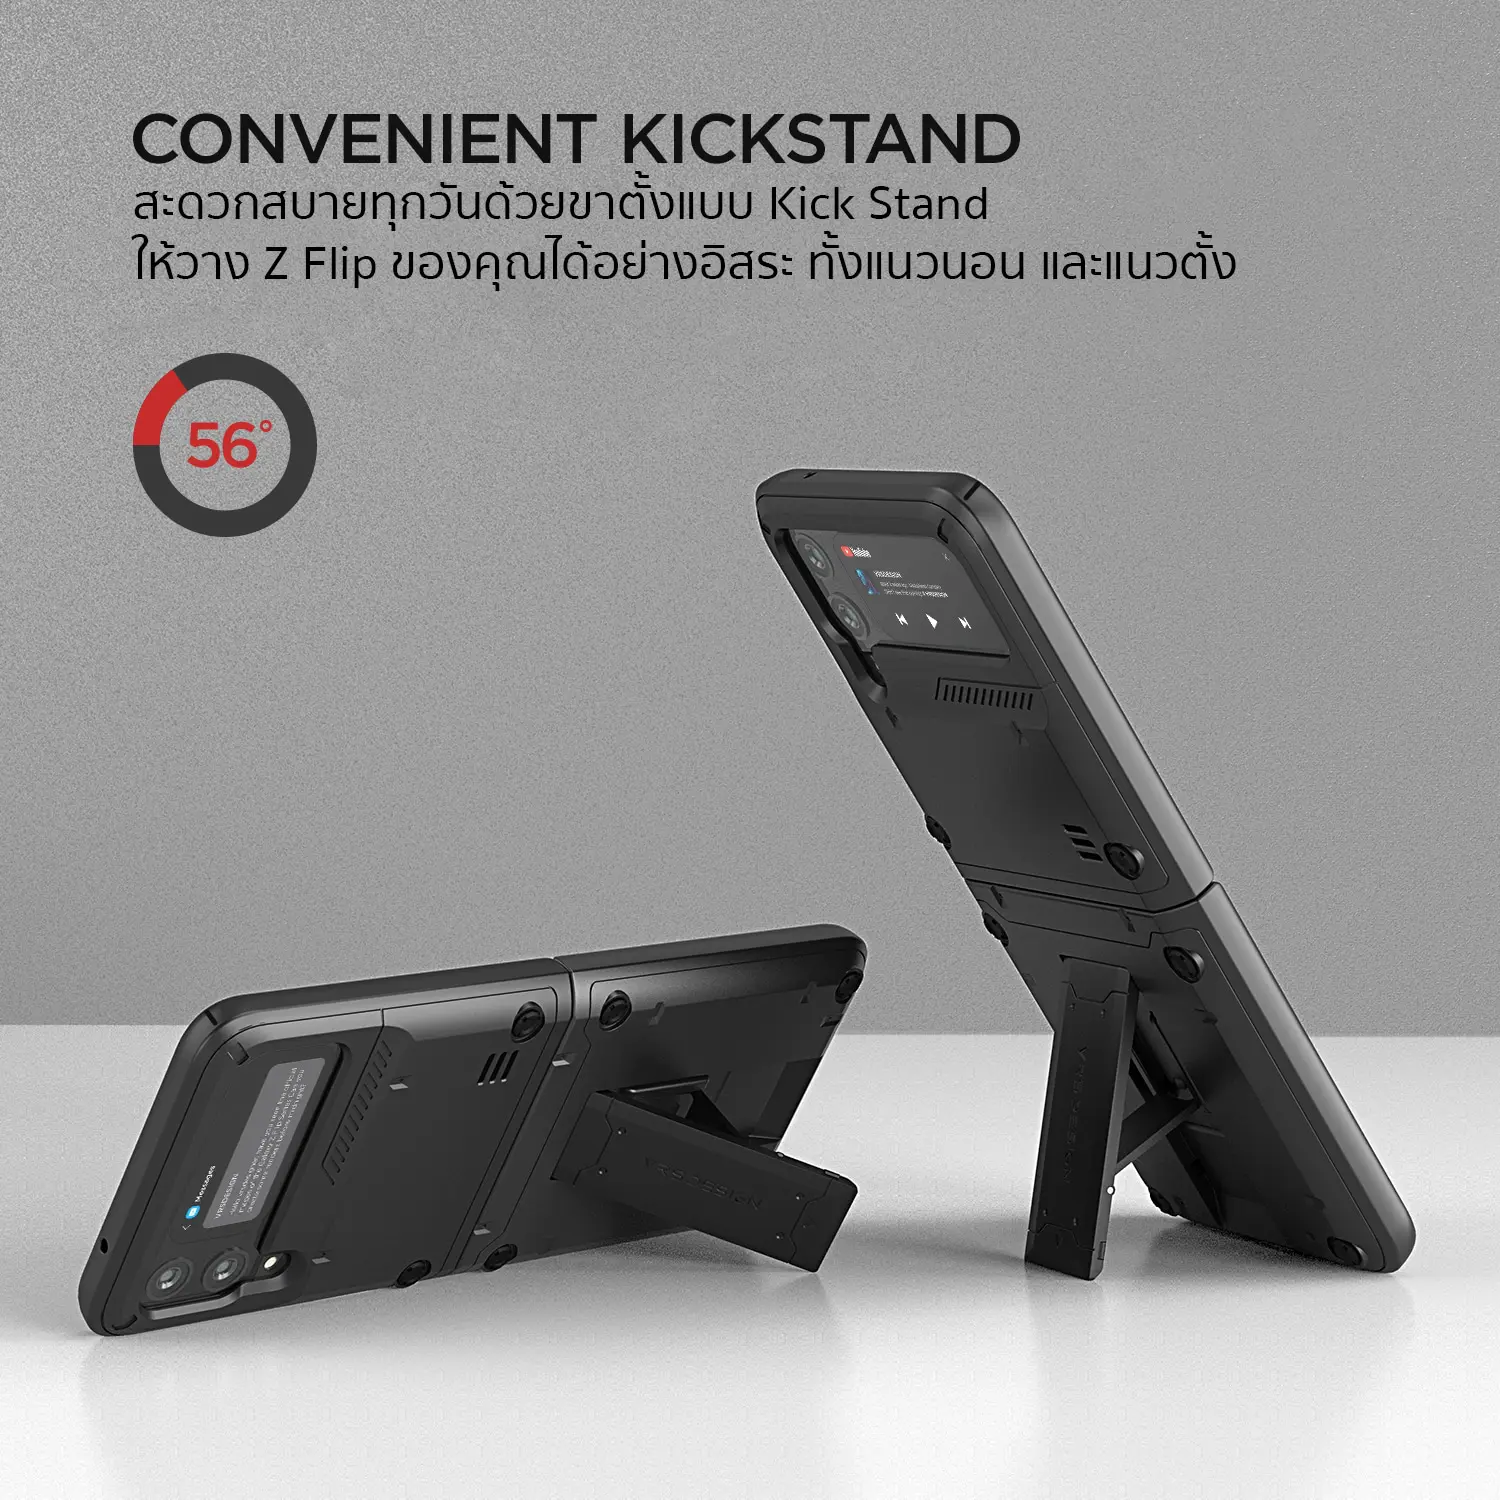 เคสกันกระแทก VRS รุ่น Quick Stand Active - Galaxy Z Flip 3 - Cream White